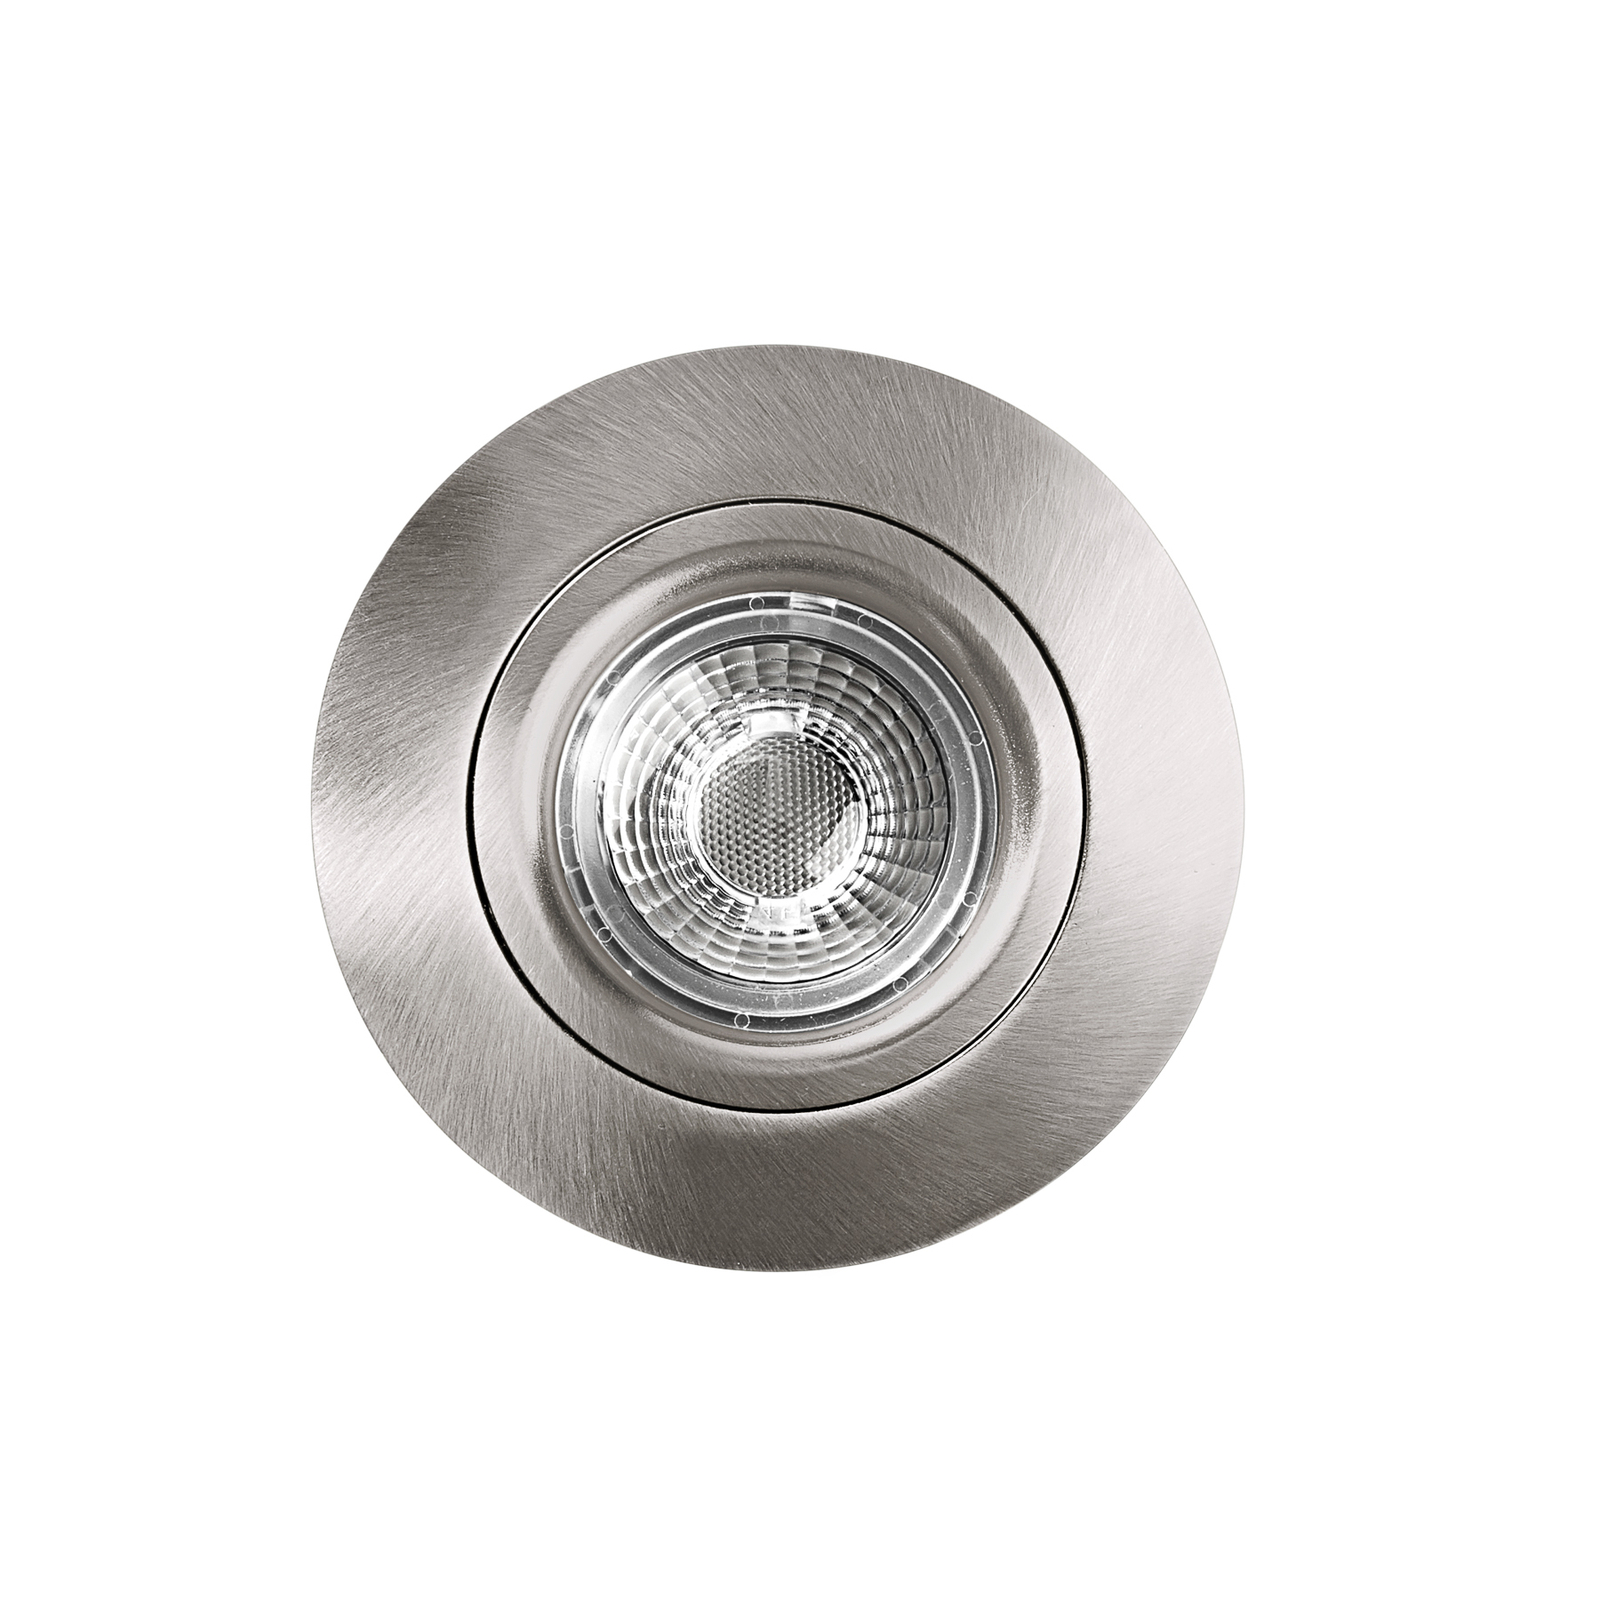 Downlight LED DL6809, okrągły, nikiel